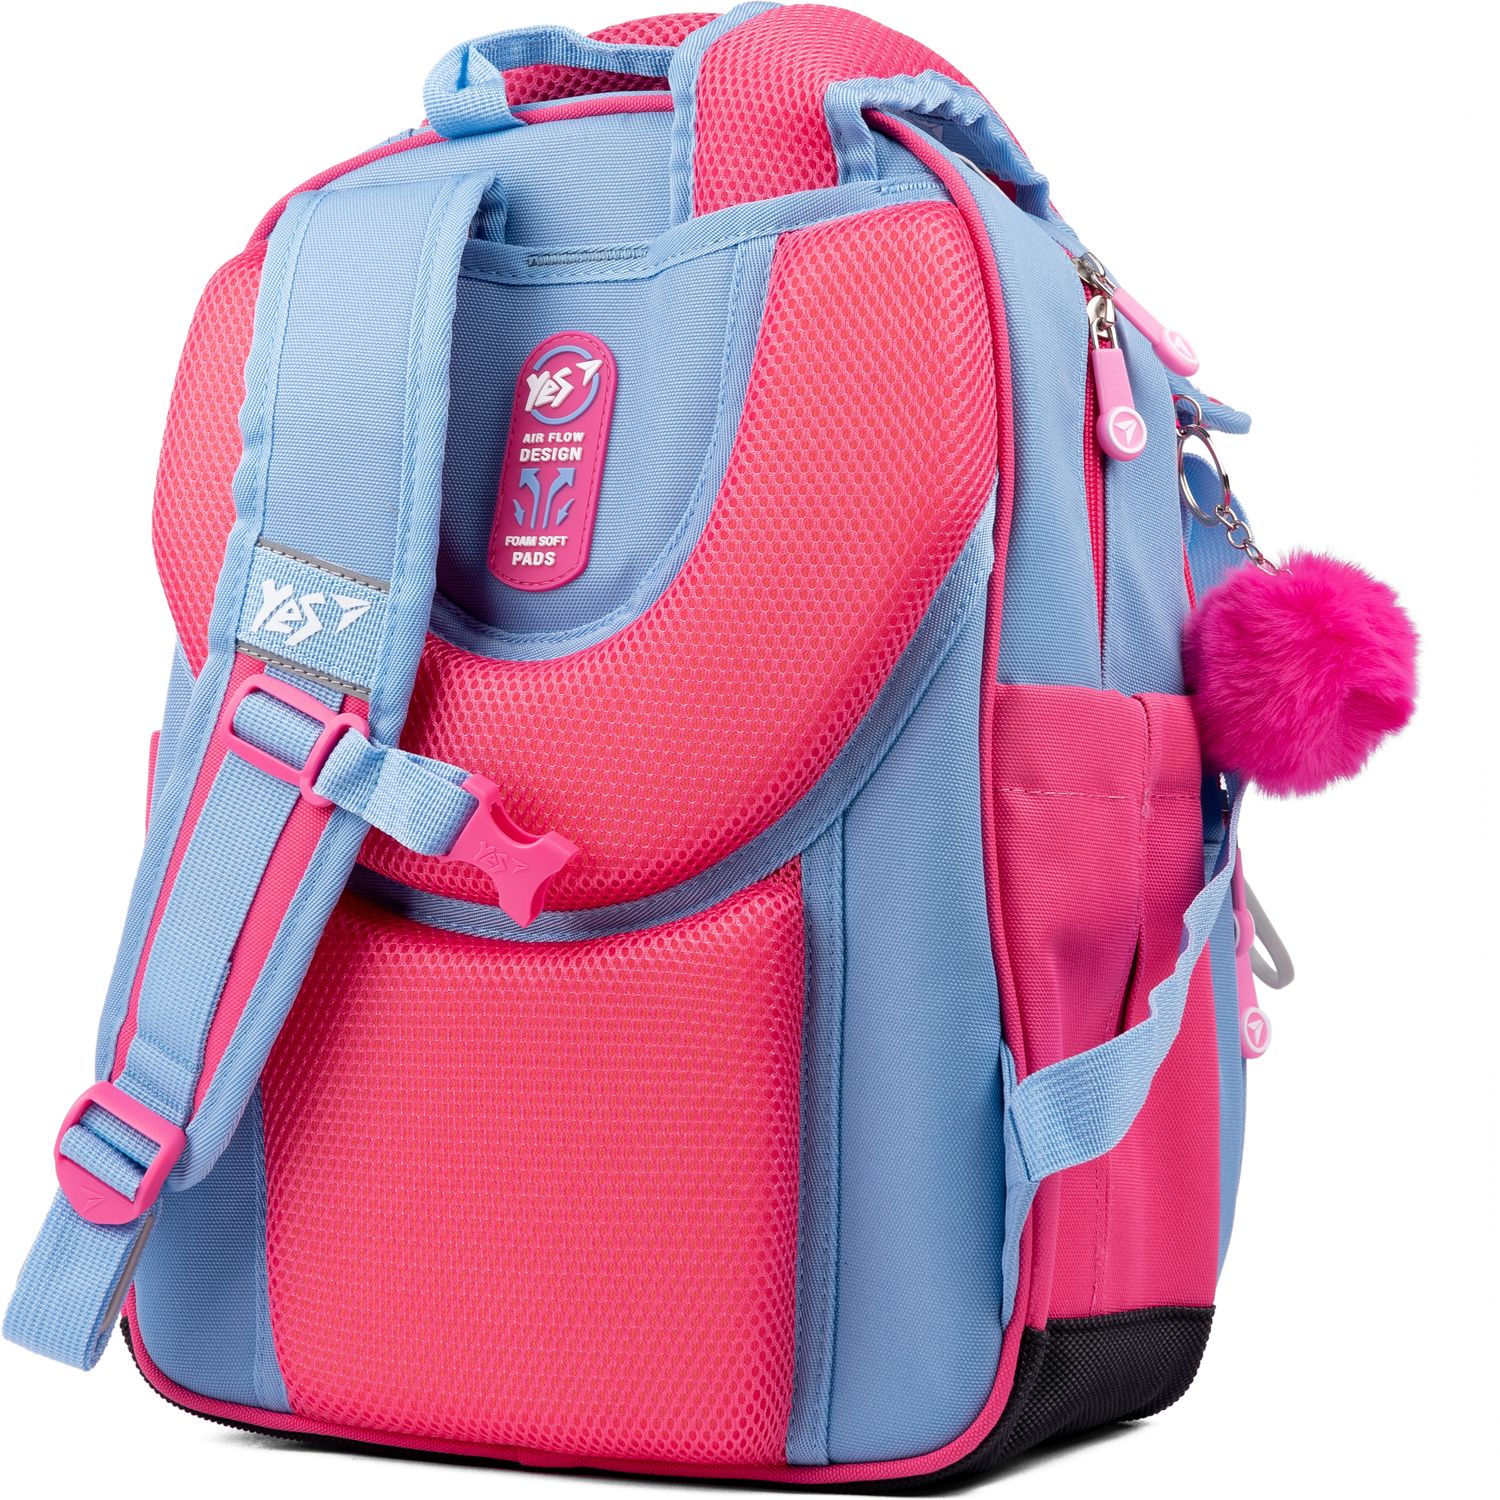 Рюкзак Yes S-91 Girls style, сиреневый с розовым (553642) - фото 4